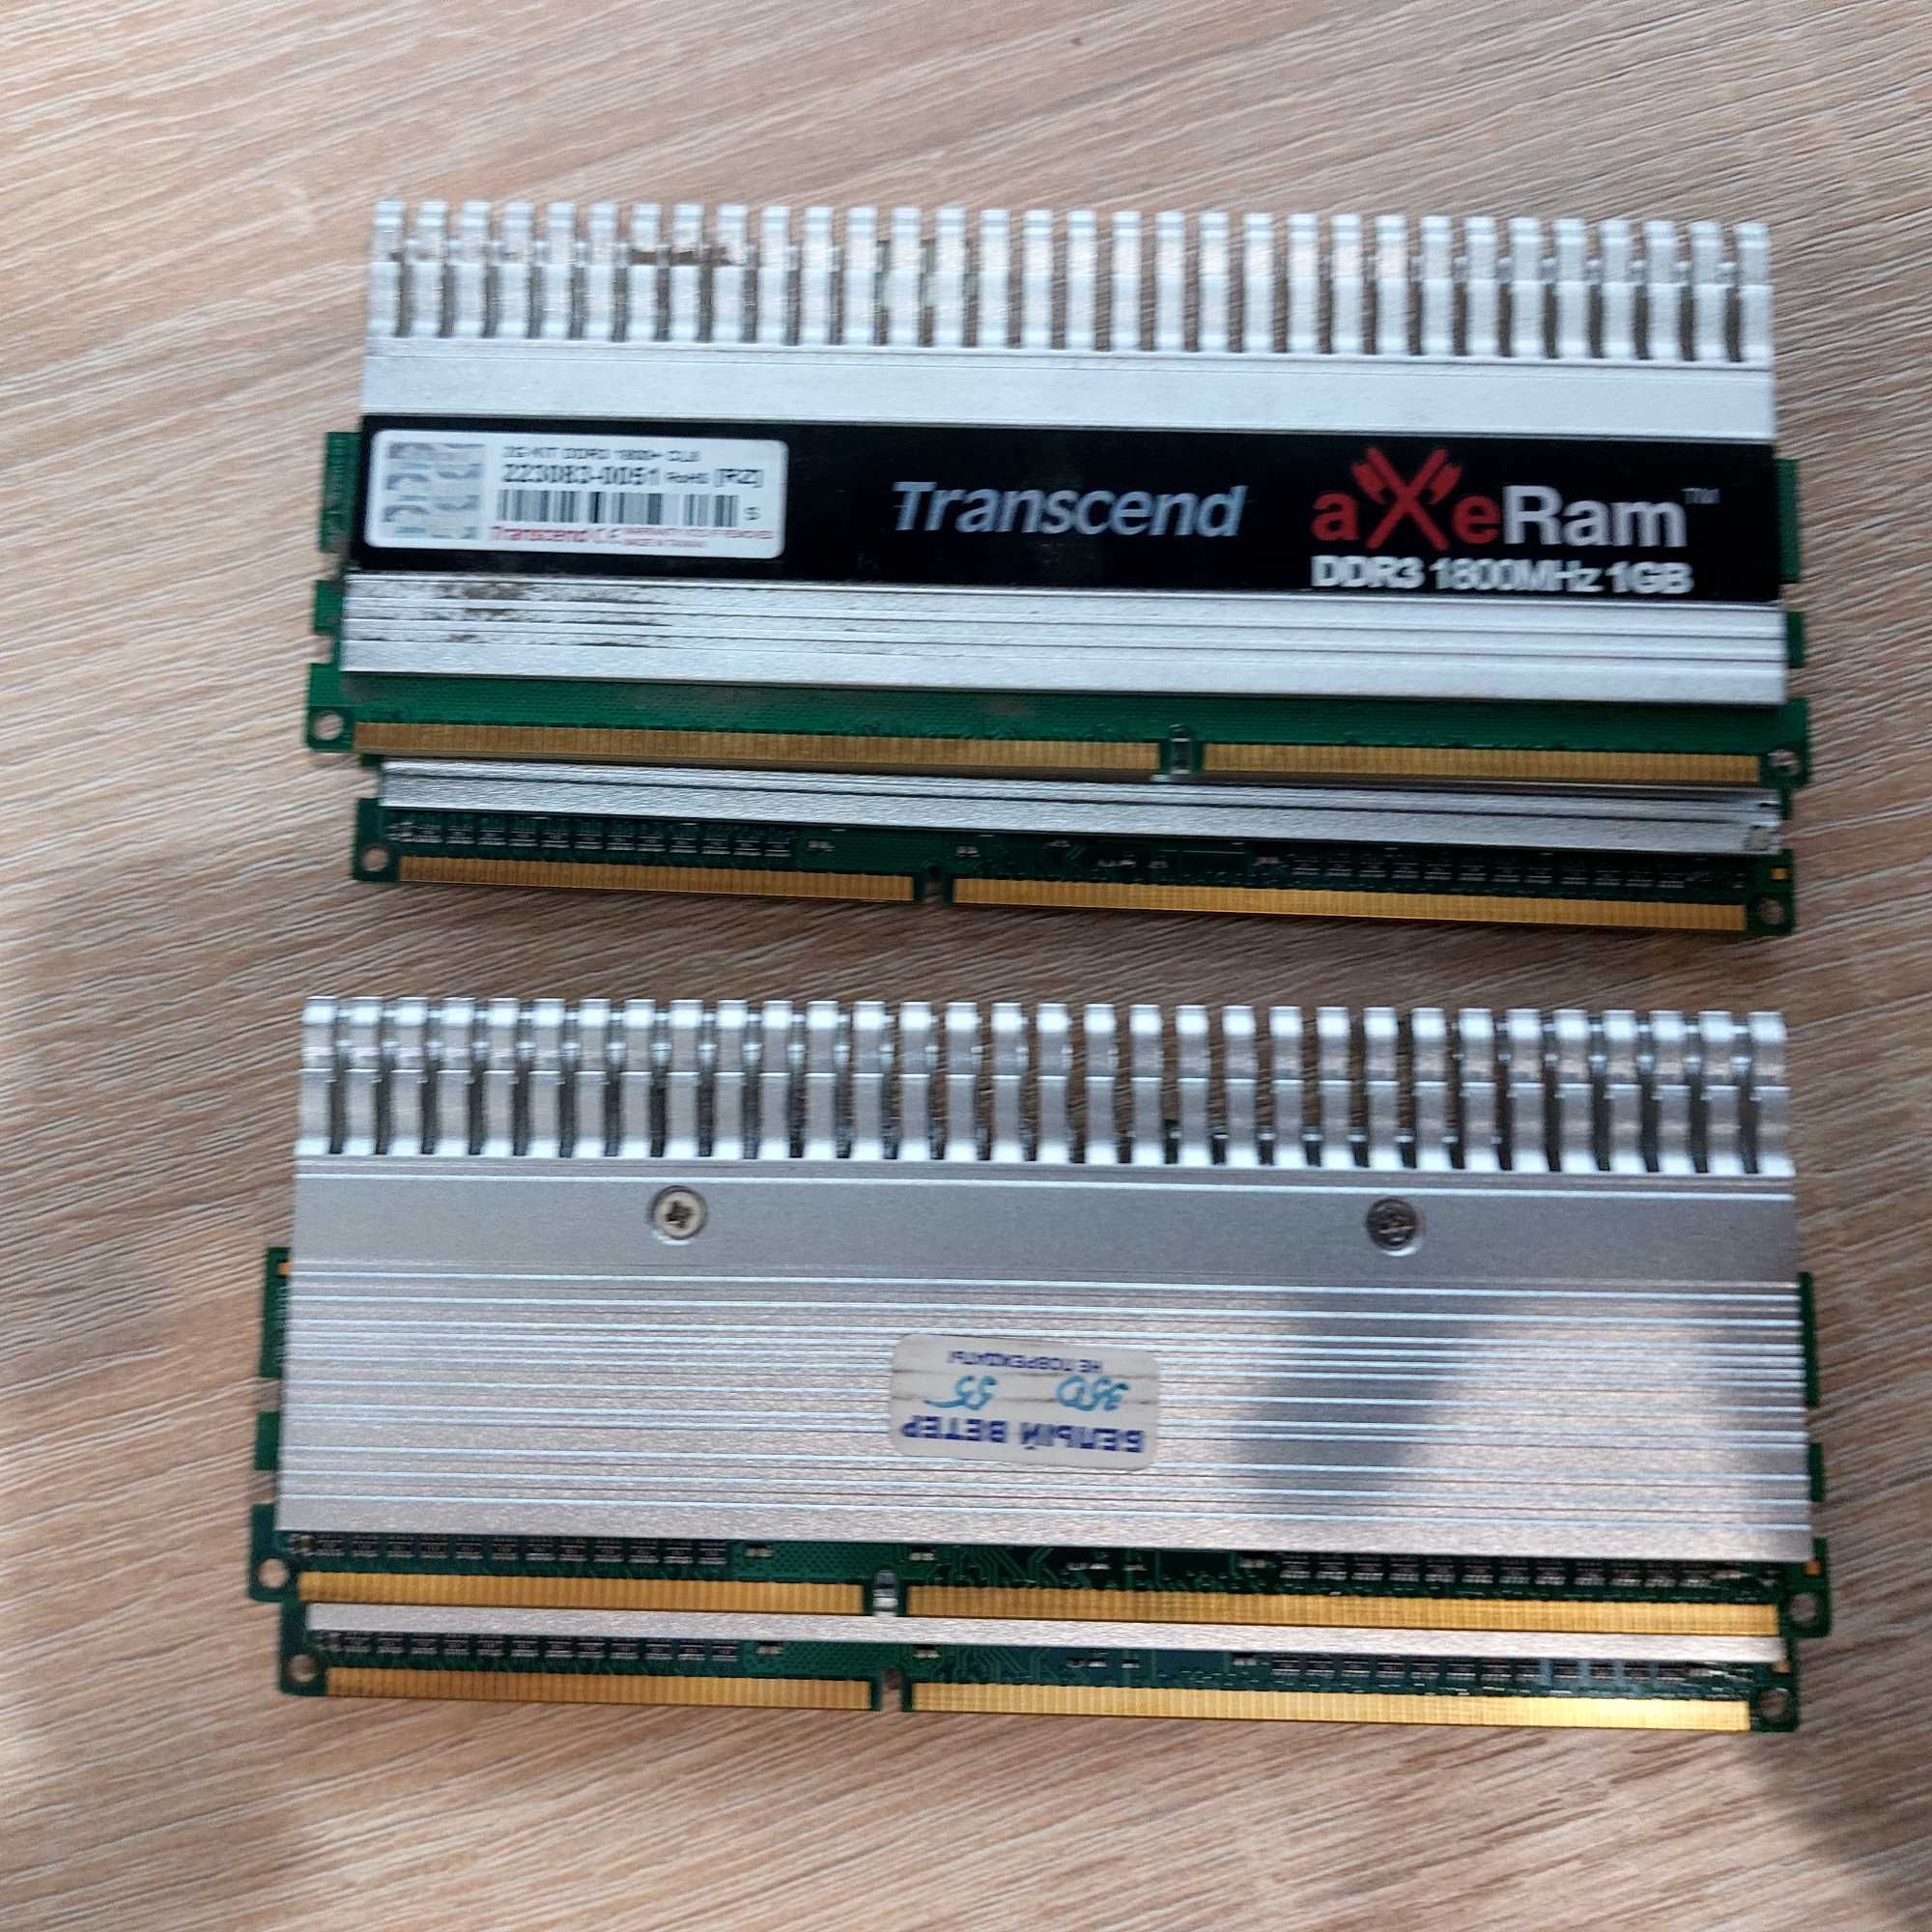 DDR3 2ГБ-4ГБ, DDR2 512МБ-2ГБ, DDR1 512МБ